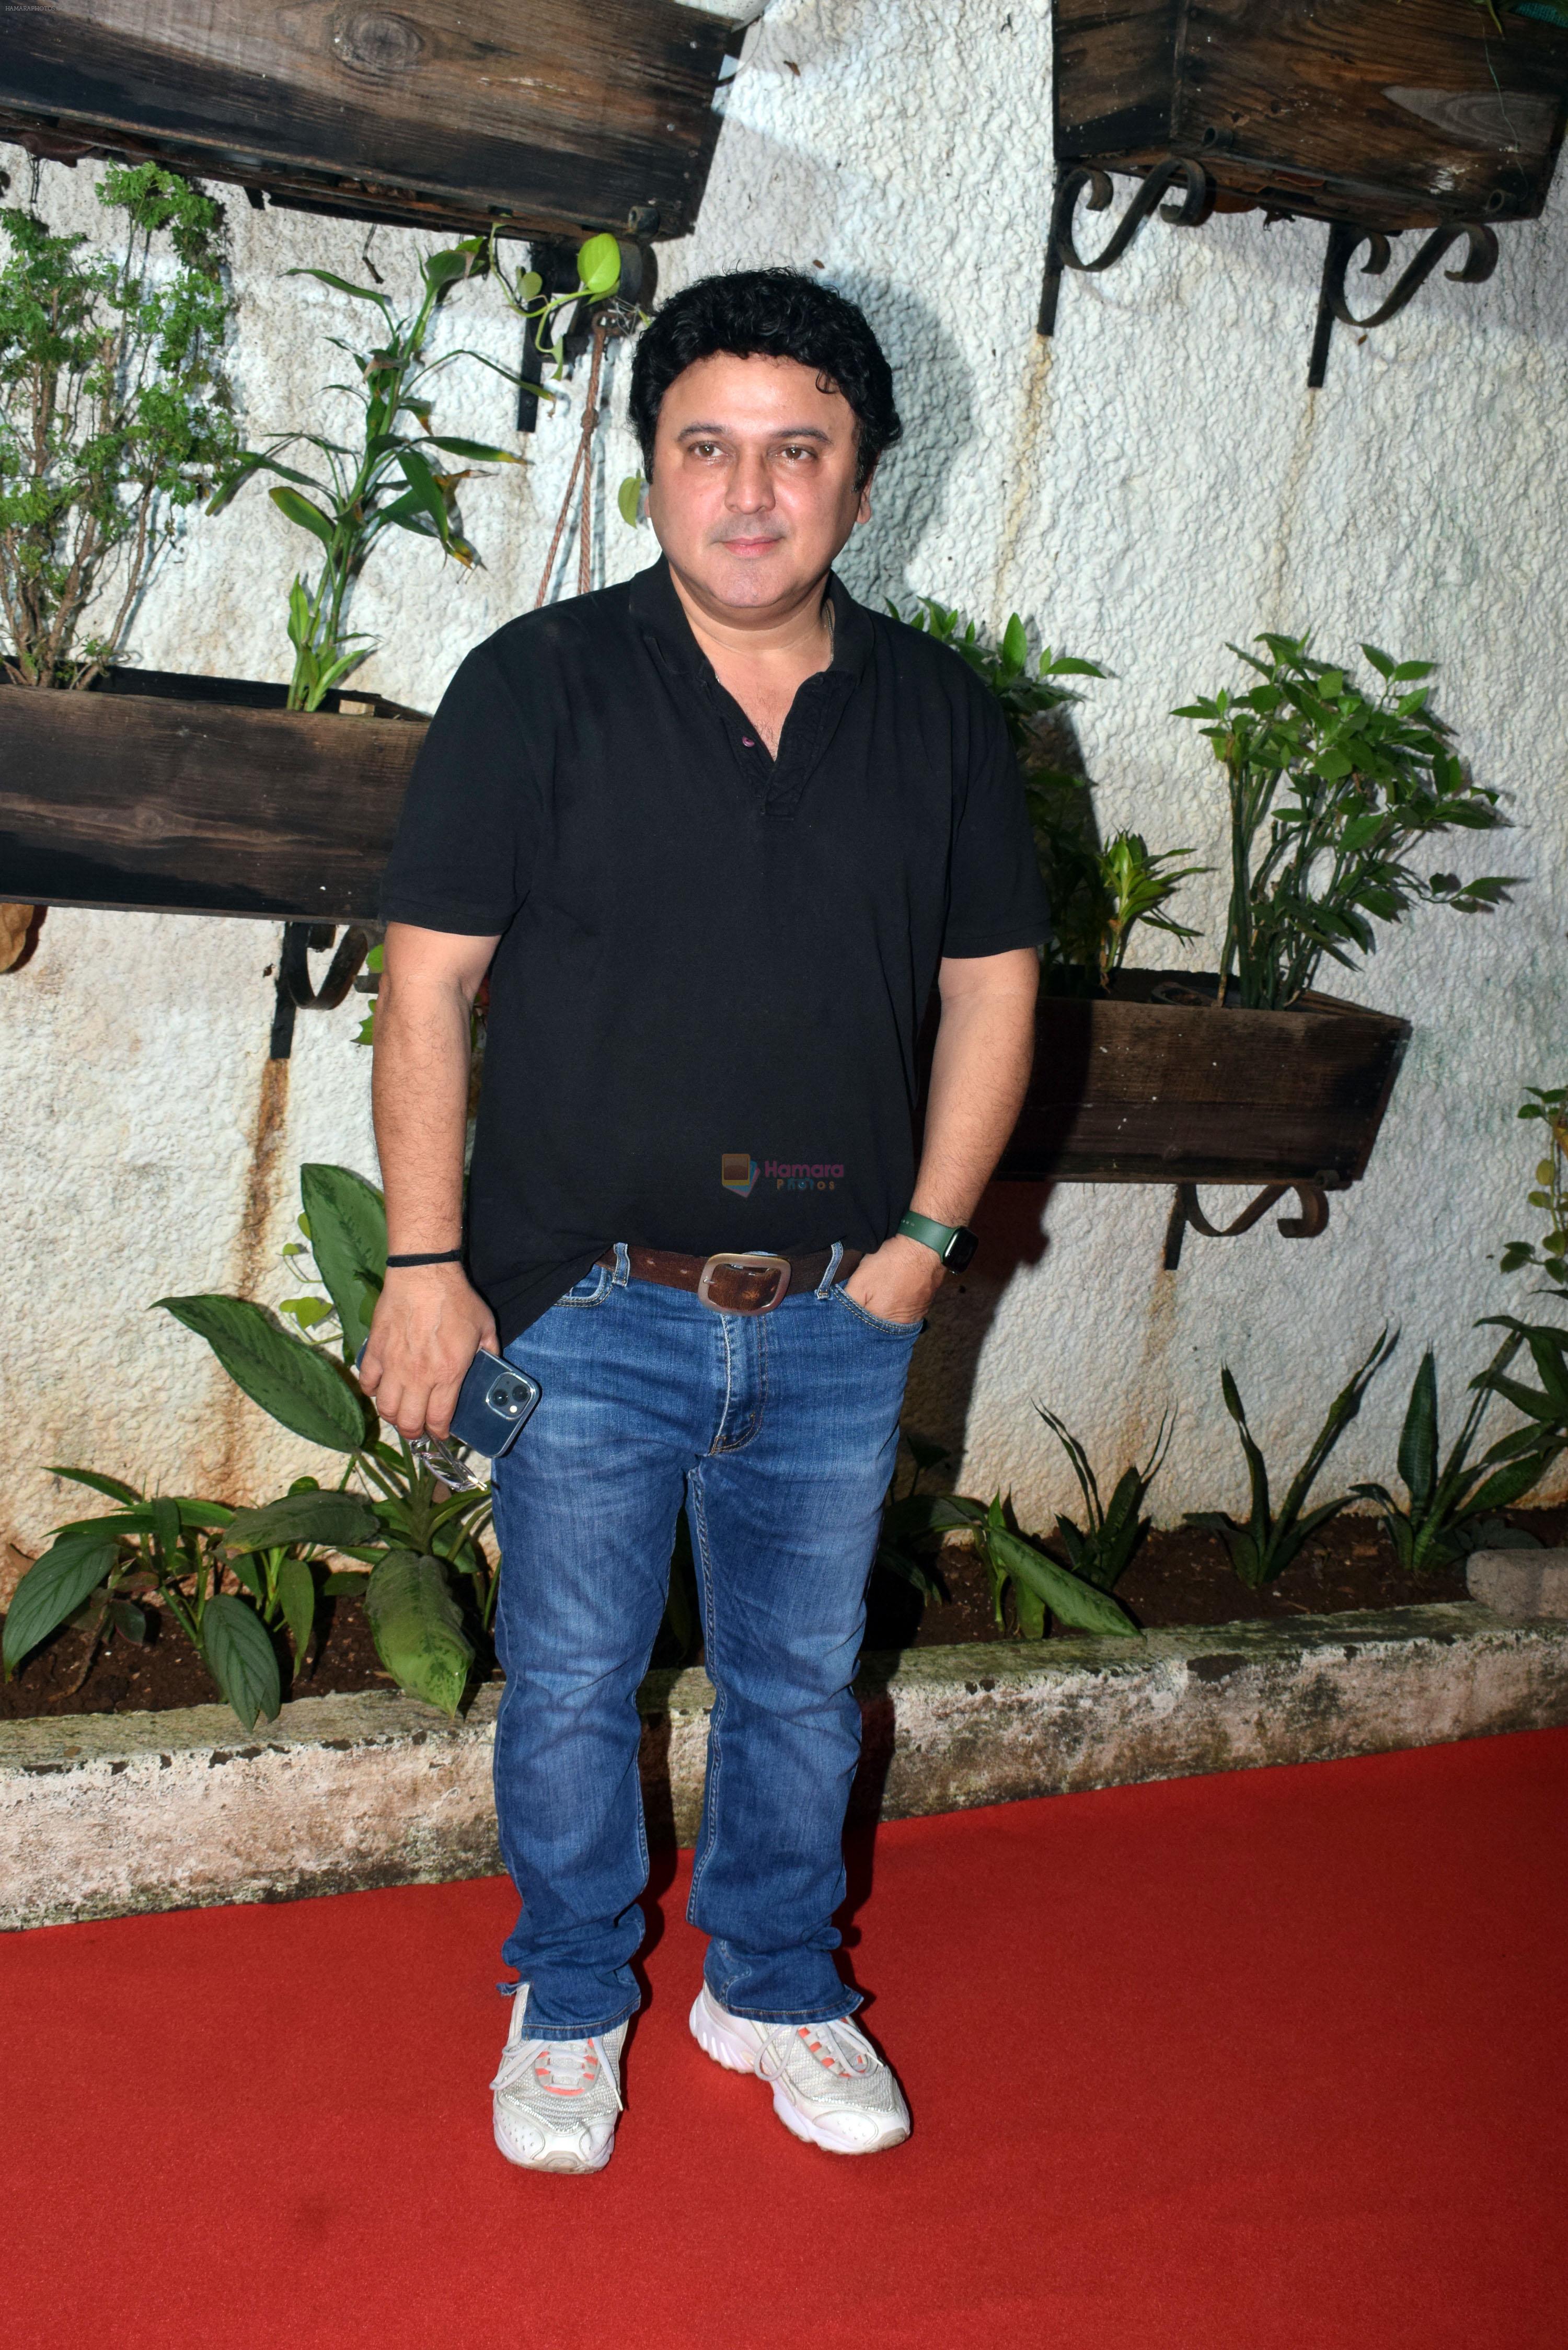 Ali Asgar at the premiere of Aakhri Sach series